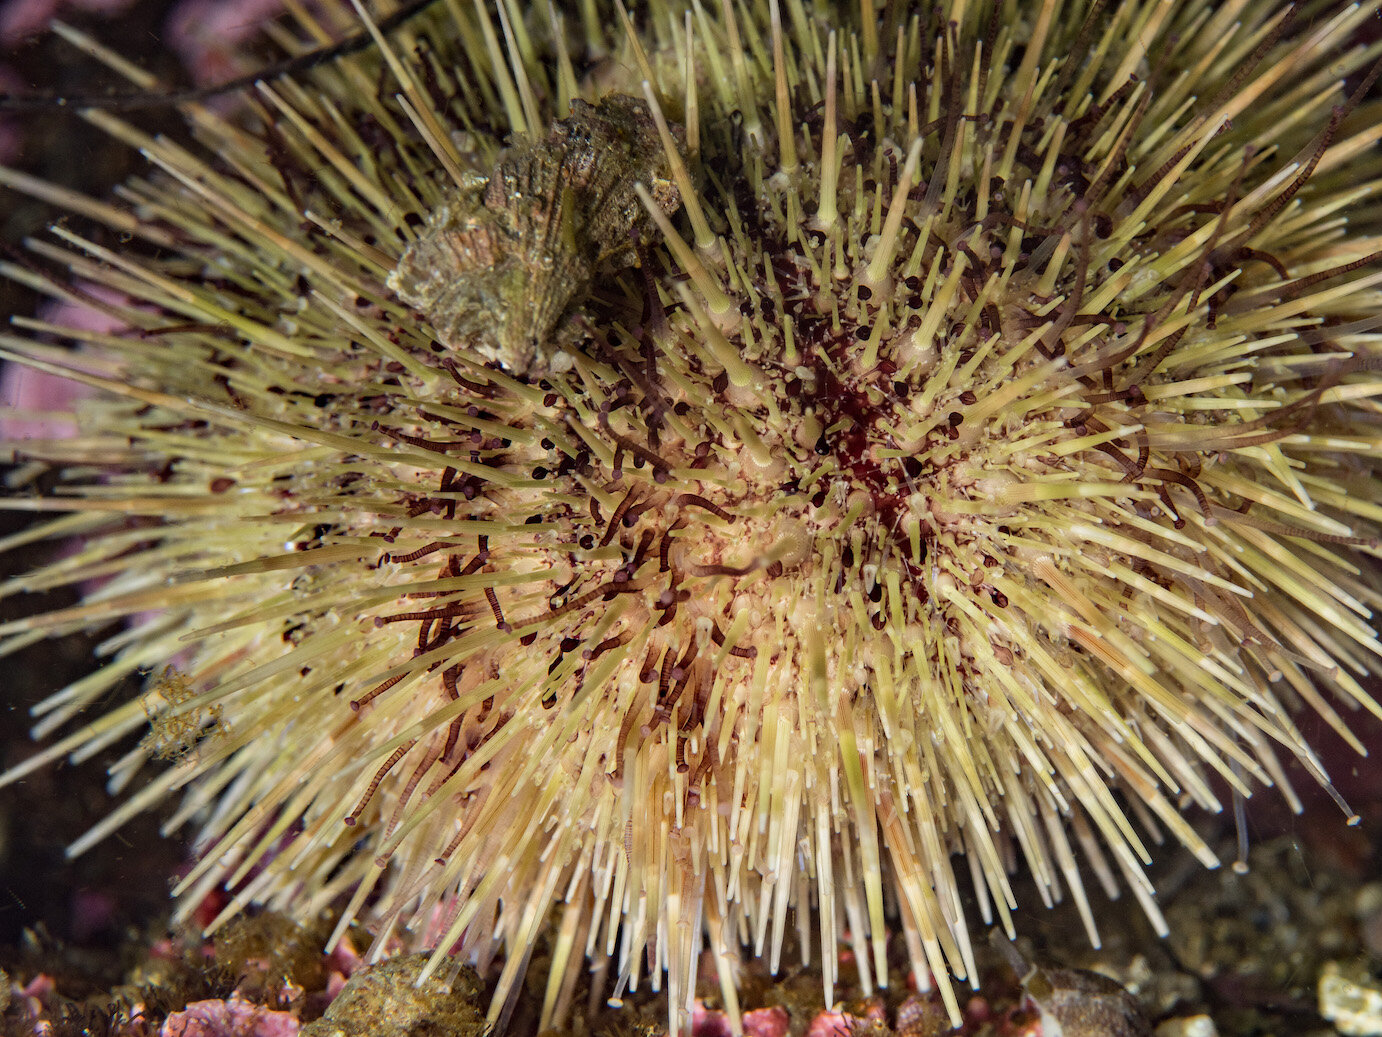 Washington Green Sea Urchin by Laura Tesler